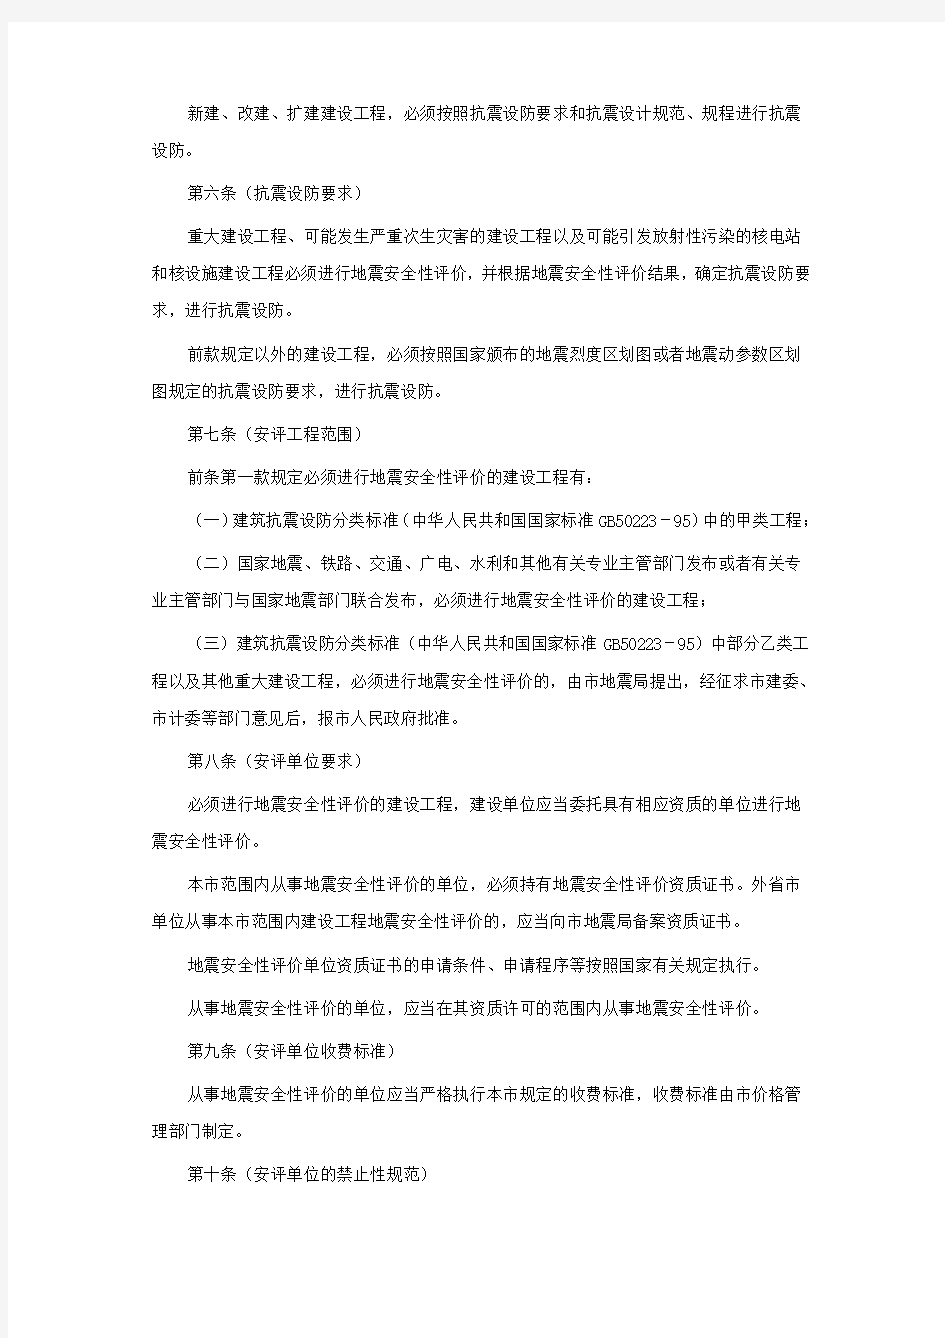 T020502-001上海市建设工程抗震设防管理办法